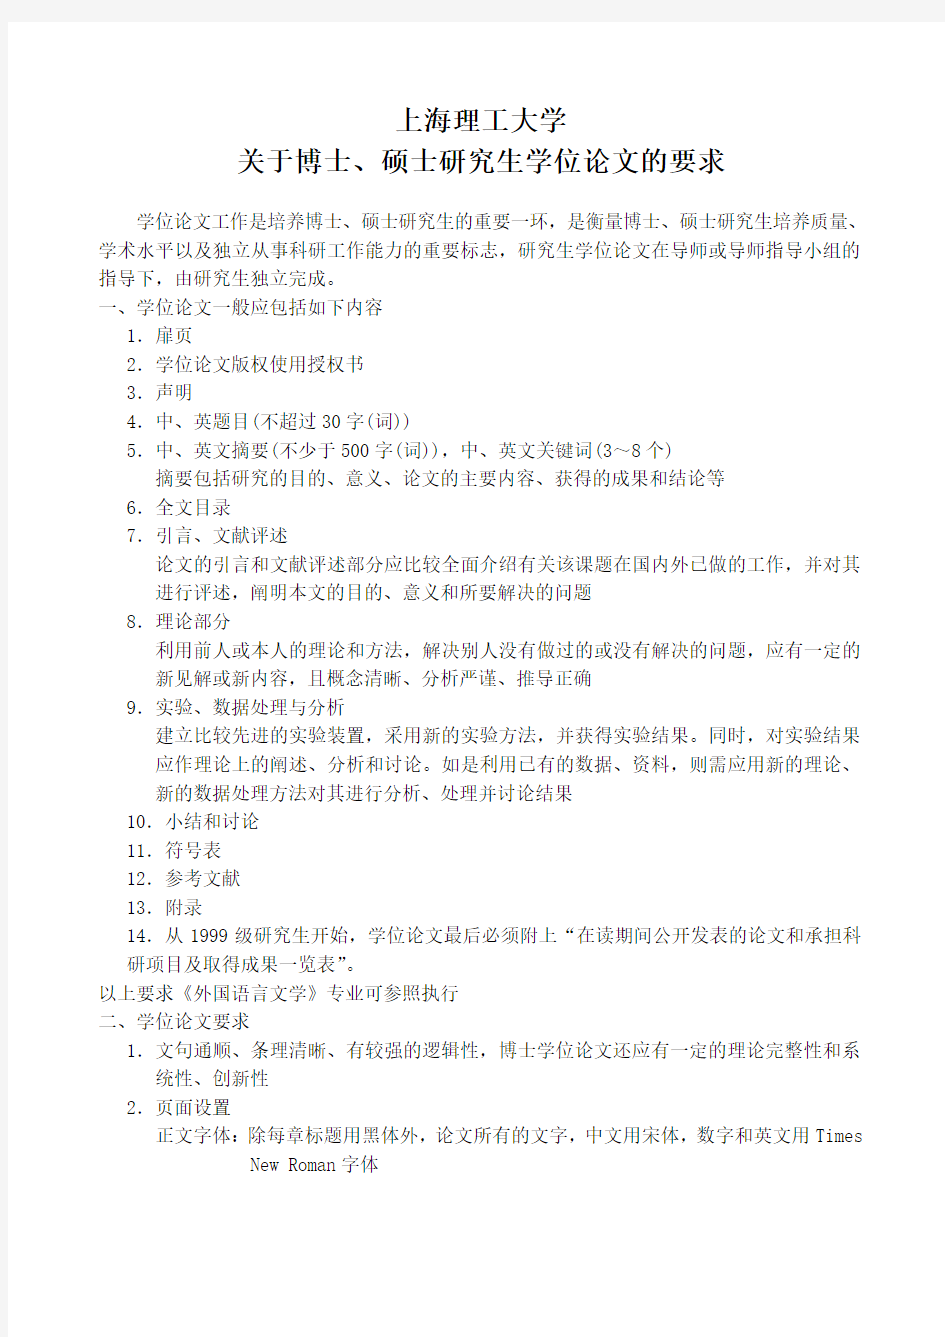 上海理工大学博士、硕士学位论文格式要求2013-12-06